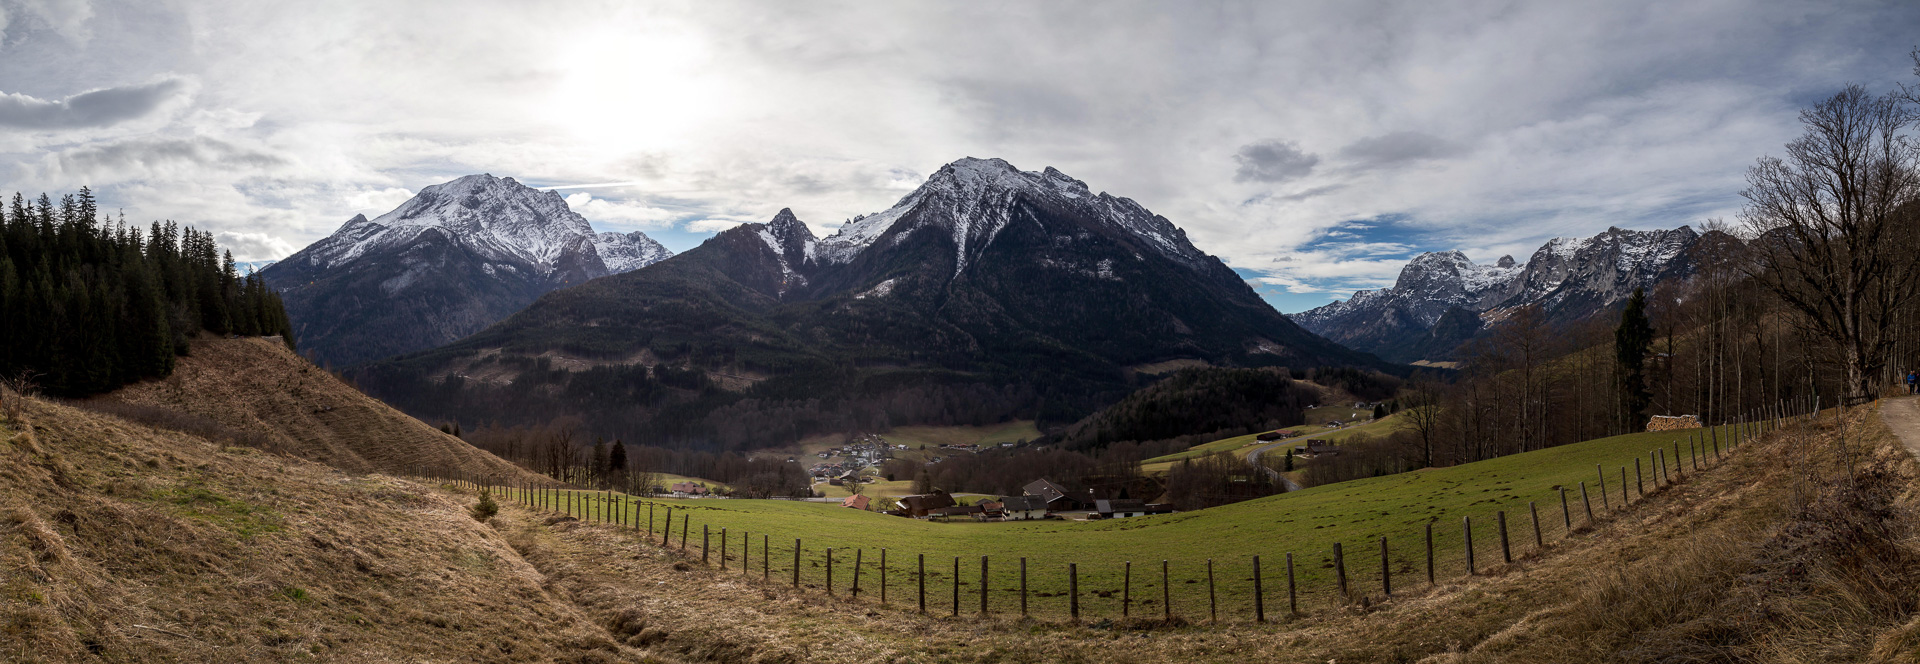 Watzmann (2.713 m) und Hochkalter (2.610 m) - rechts die Reiteralpe.